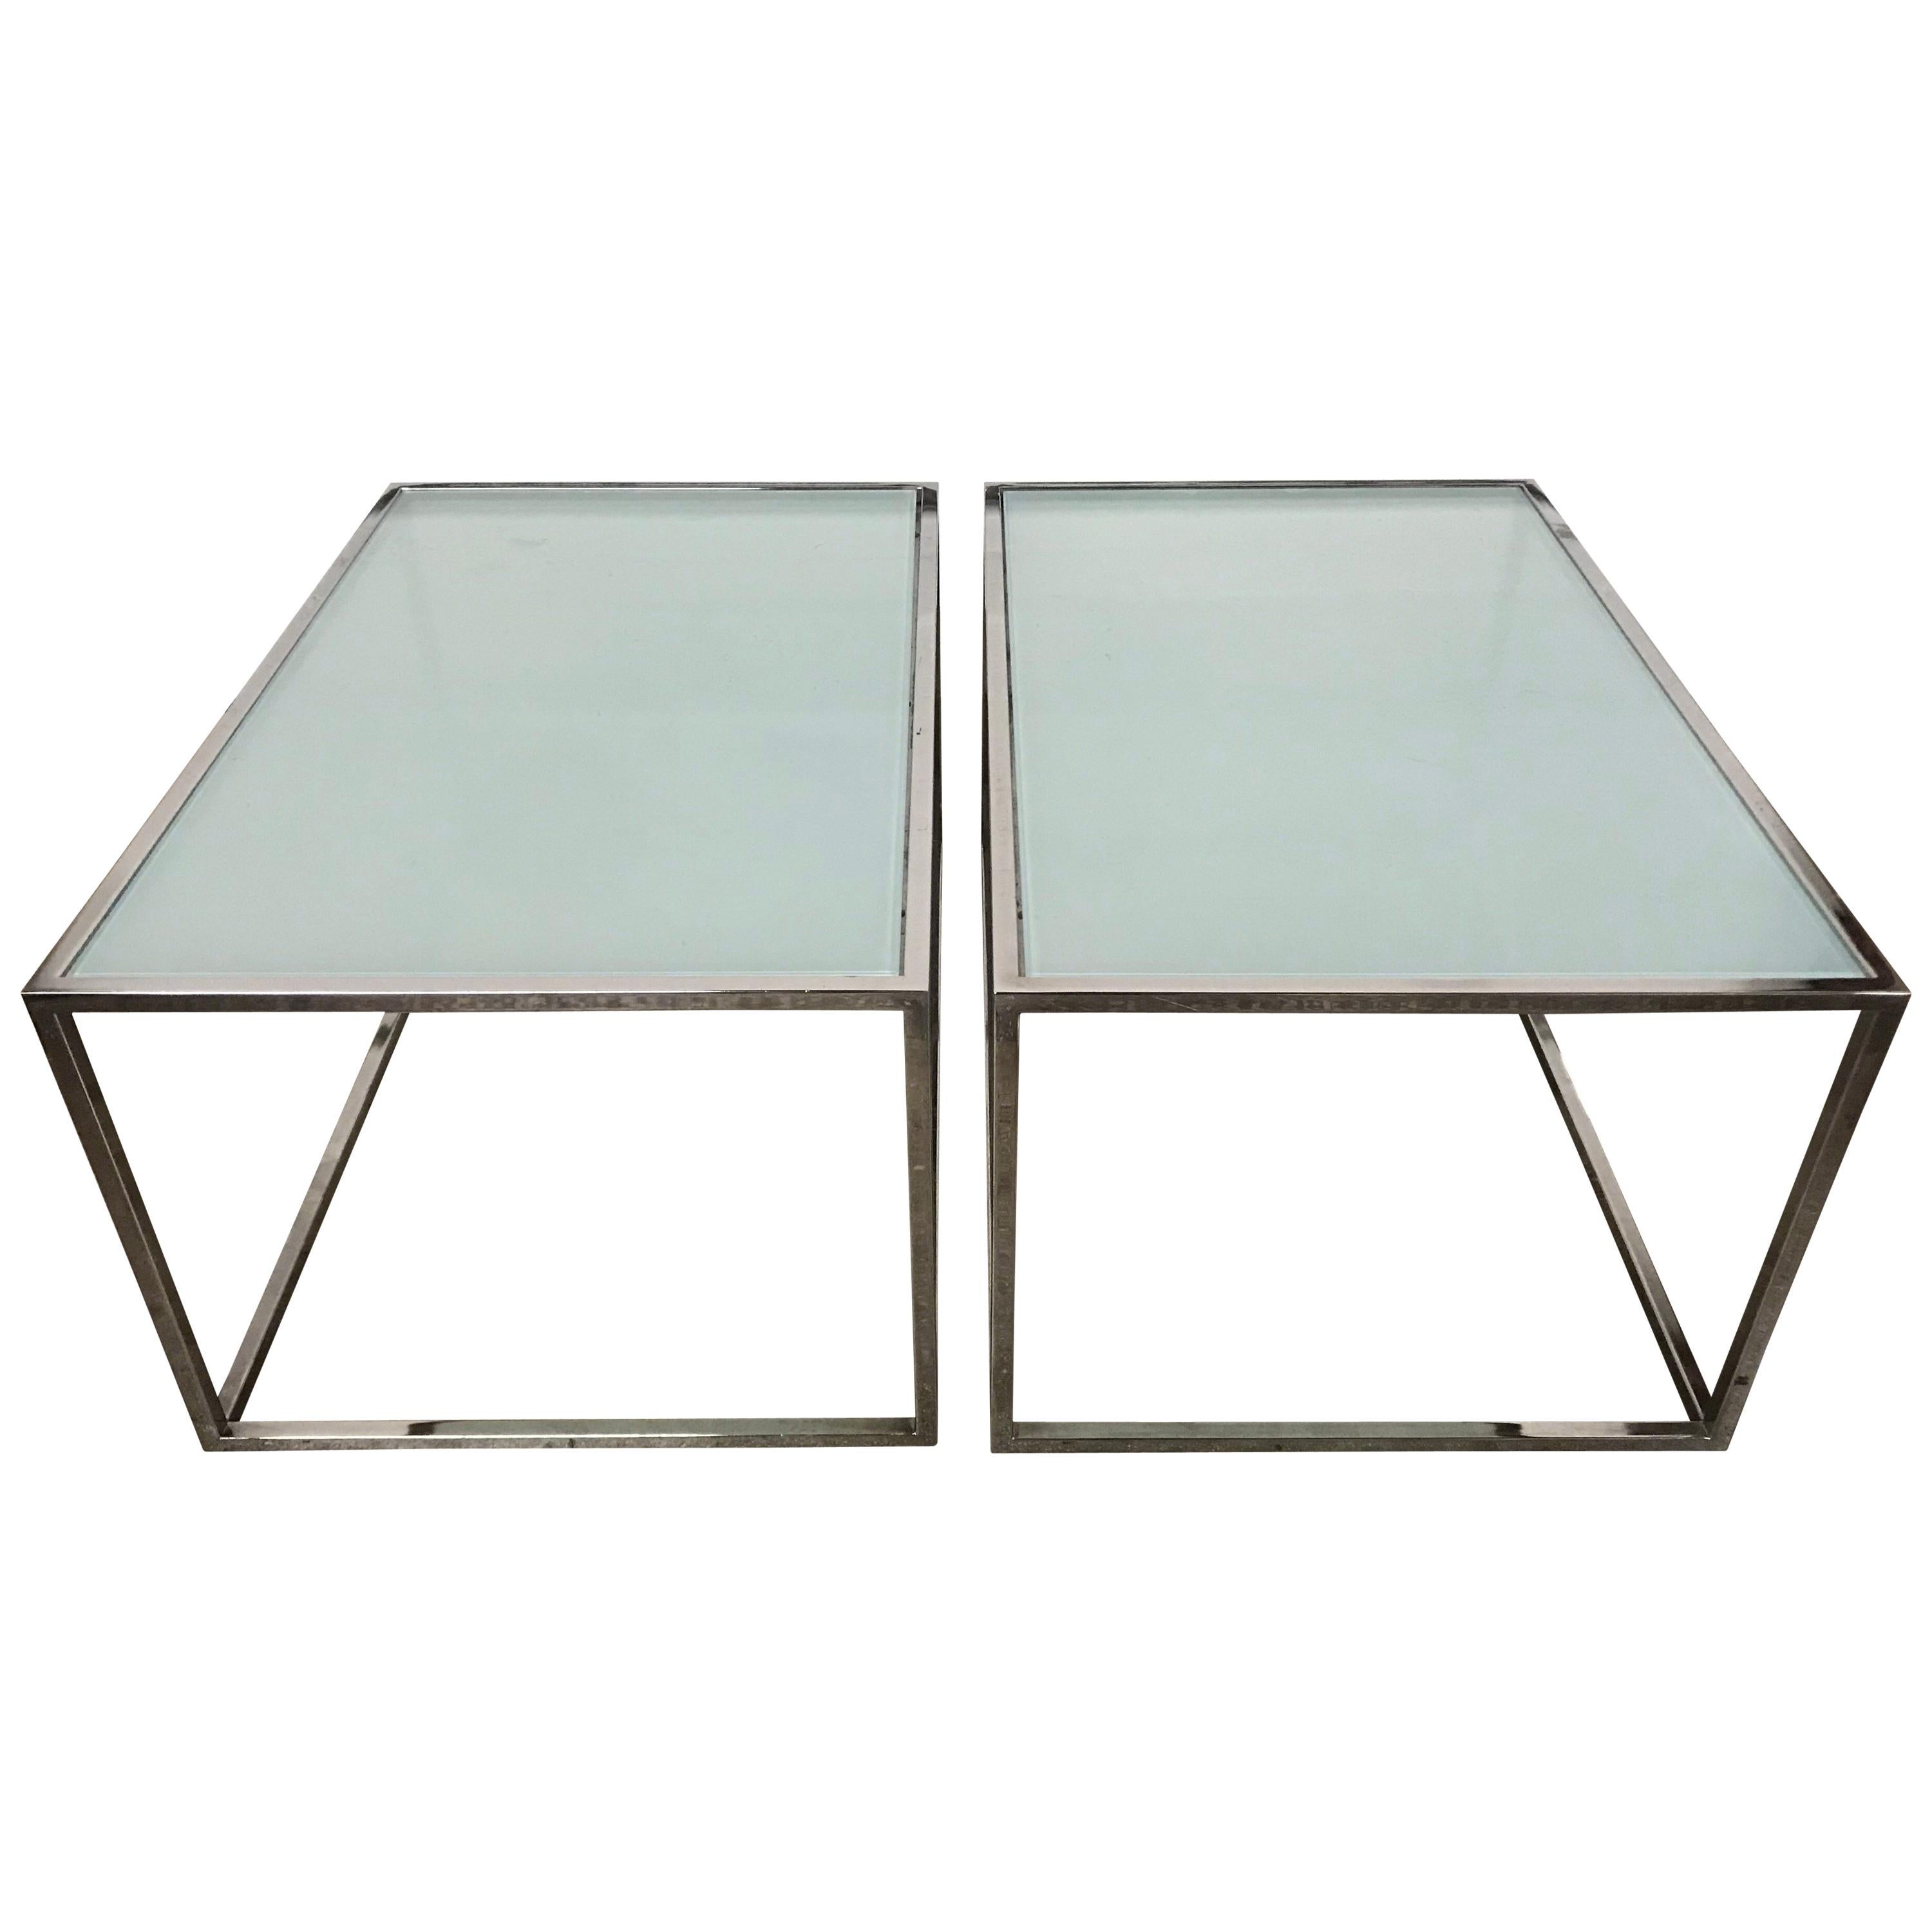 Paar Tische aus Chrom und Milchglas im Stil von Milo Baughman, ca. 1970er Jahre.